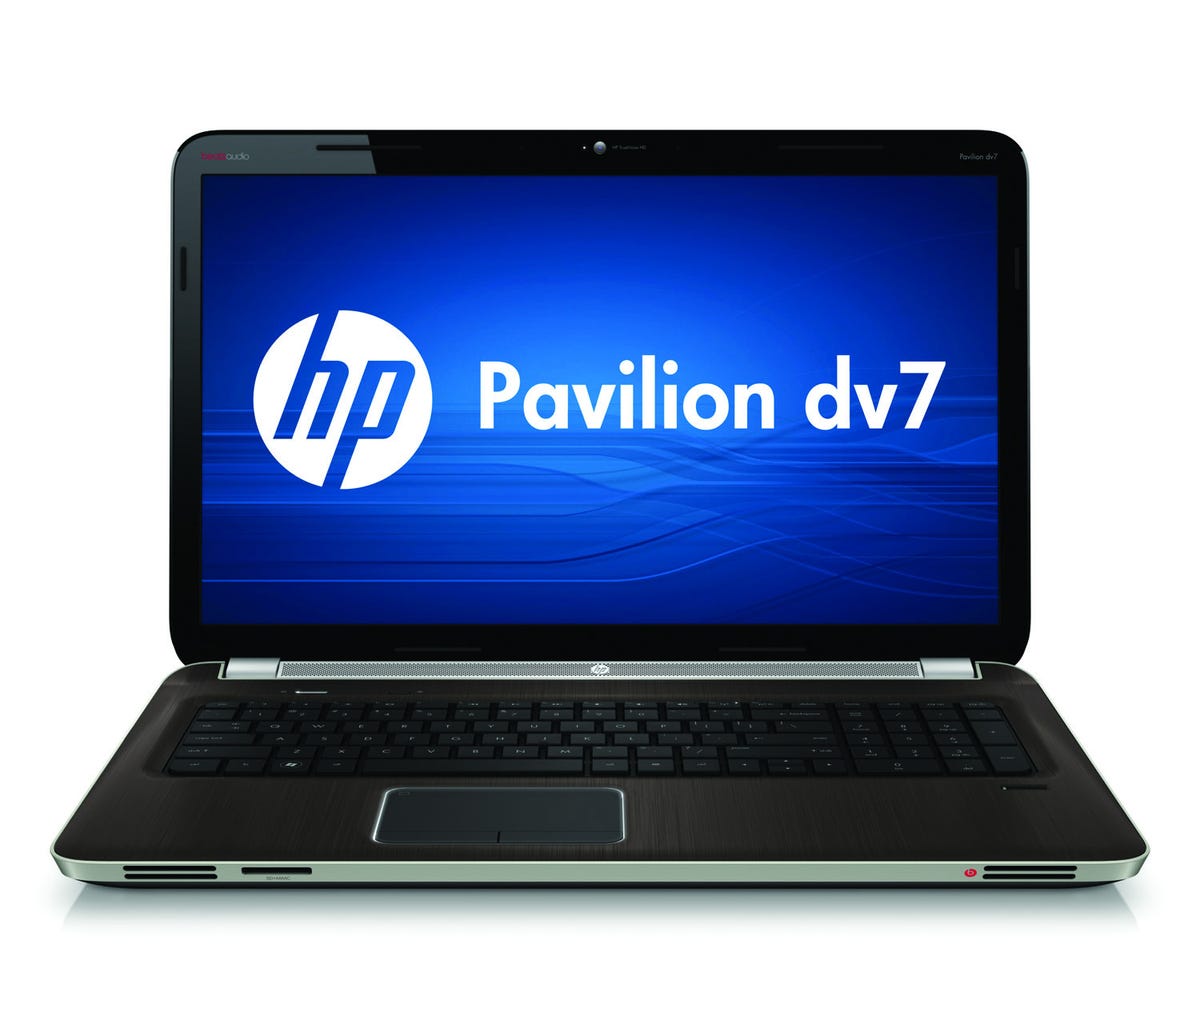 HP_Pavilion_dv7_Image_1.jpg